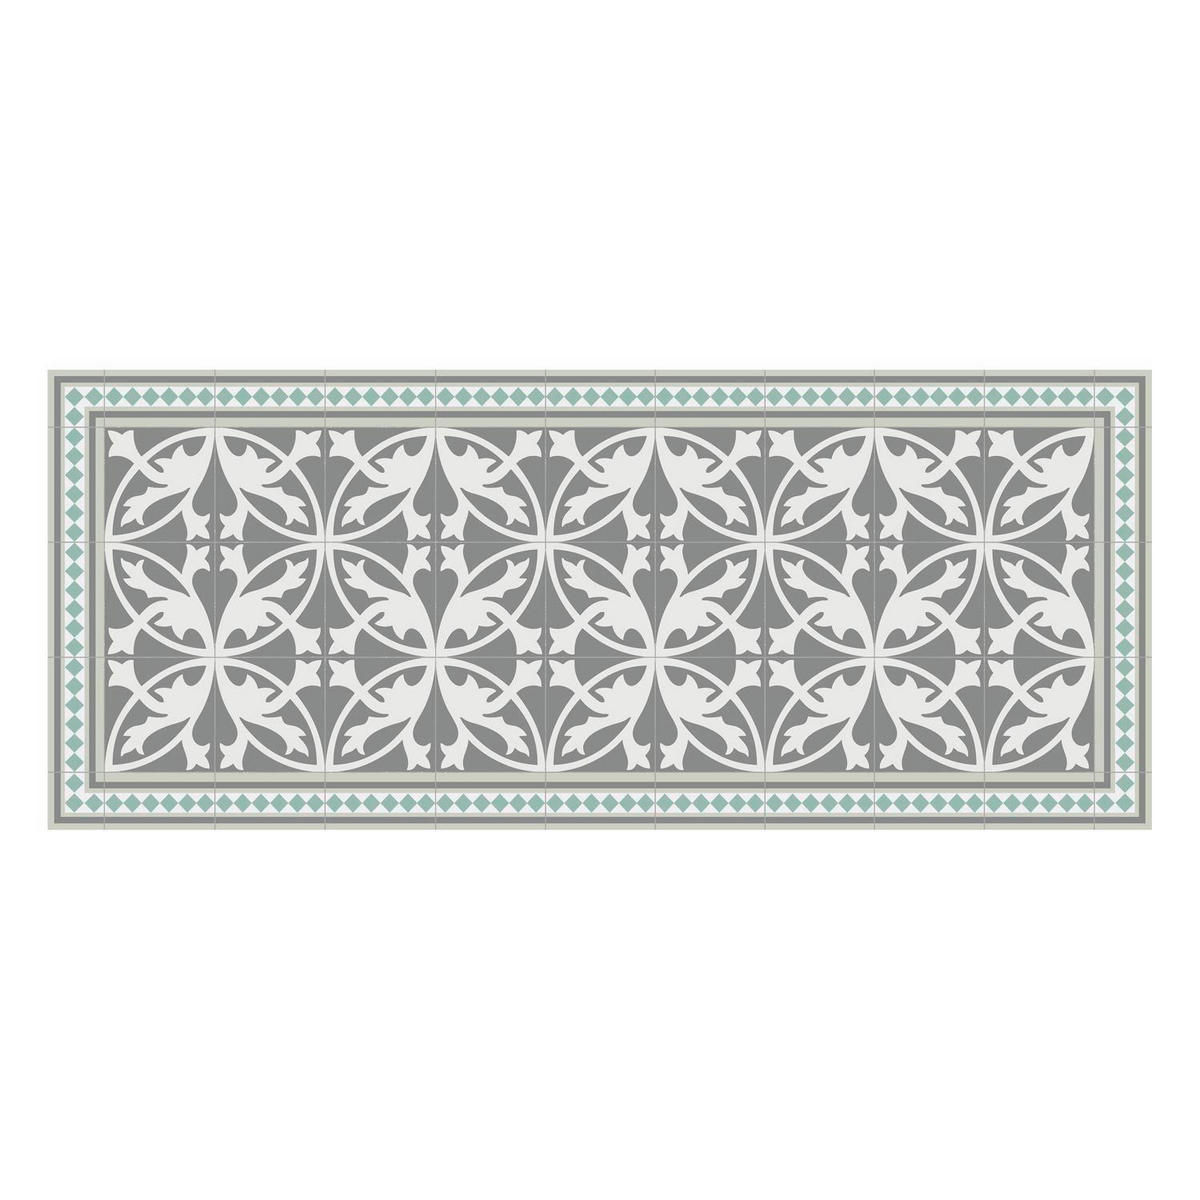 Outdoorteppich mit Mosaik-Muster in Grau shoppen